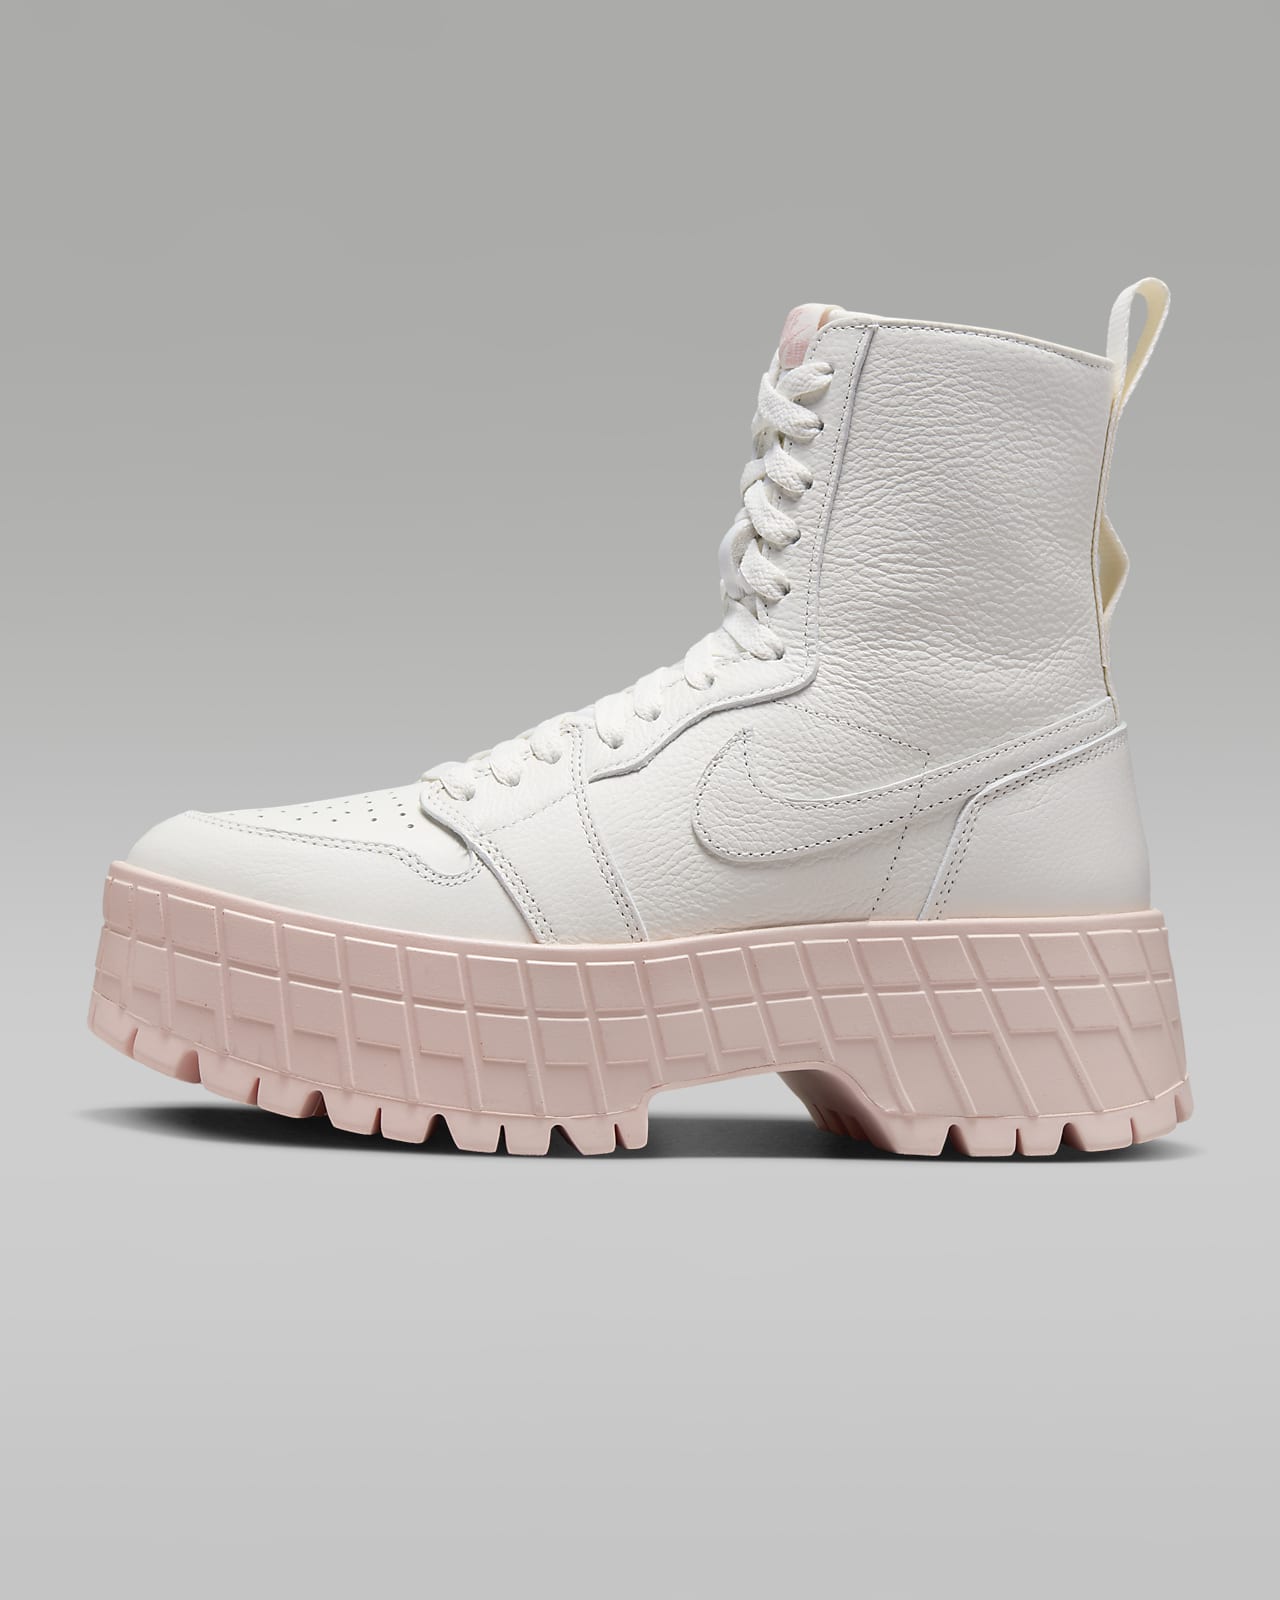 Air Jordan 1 Brooklyn 女靴